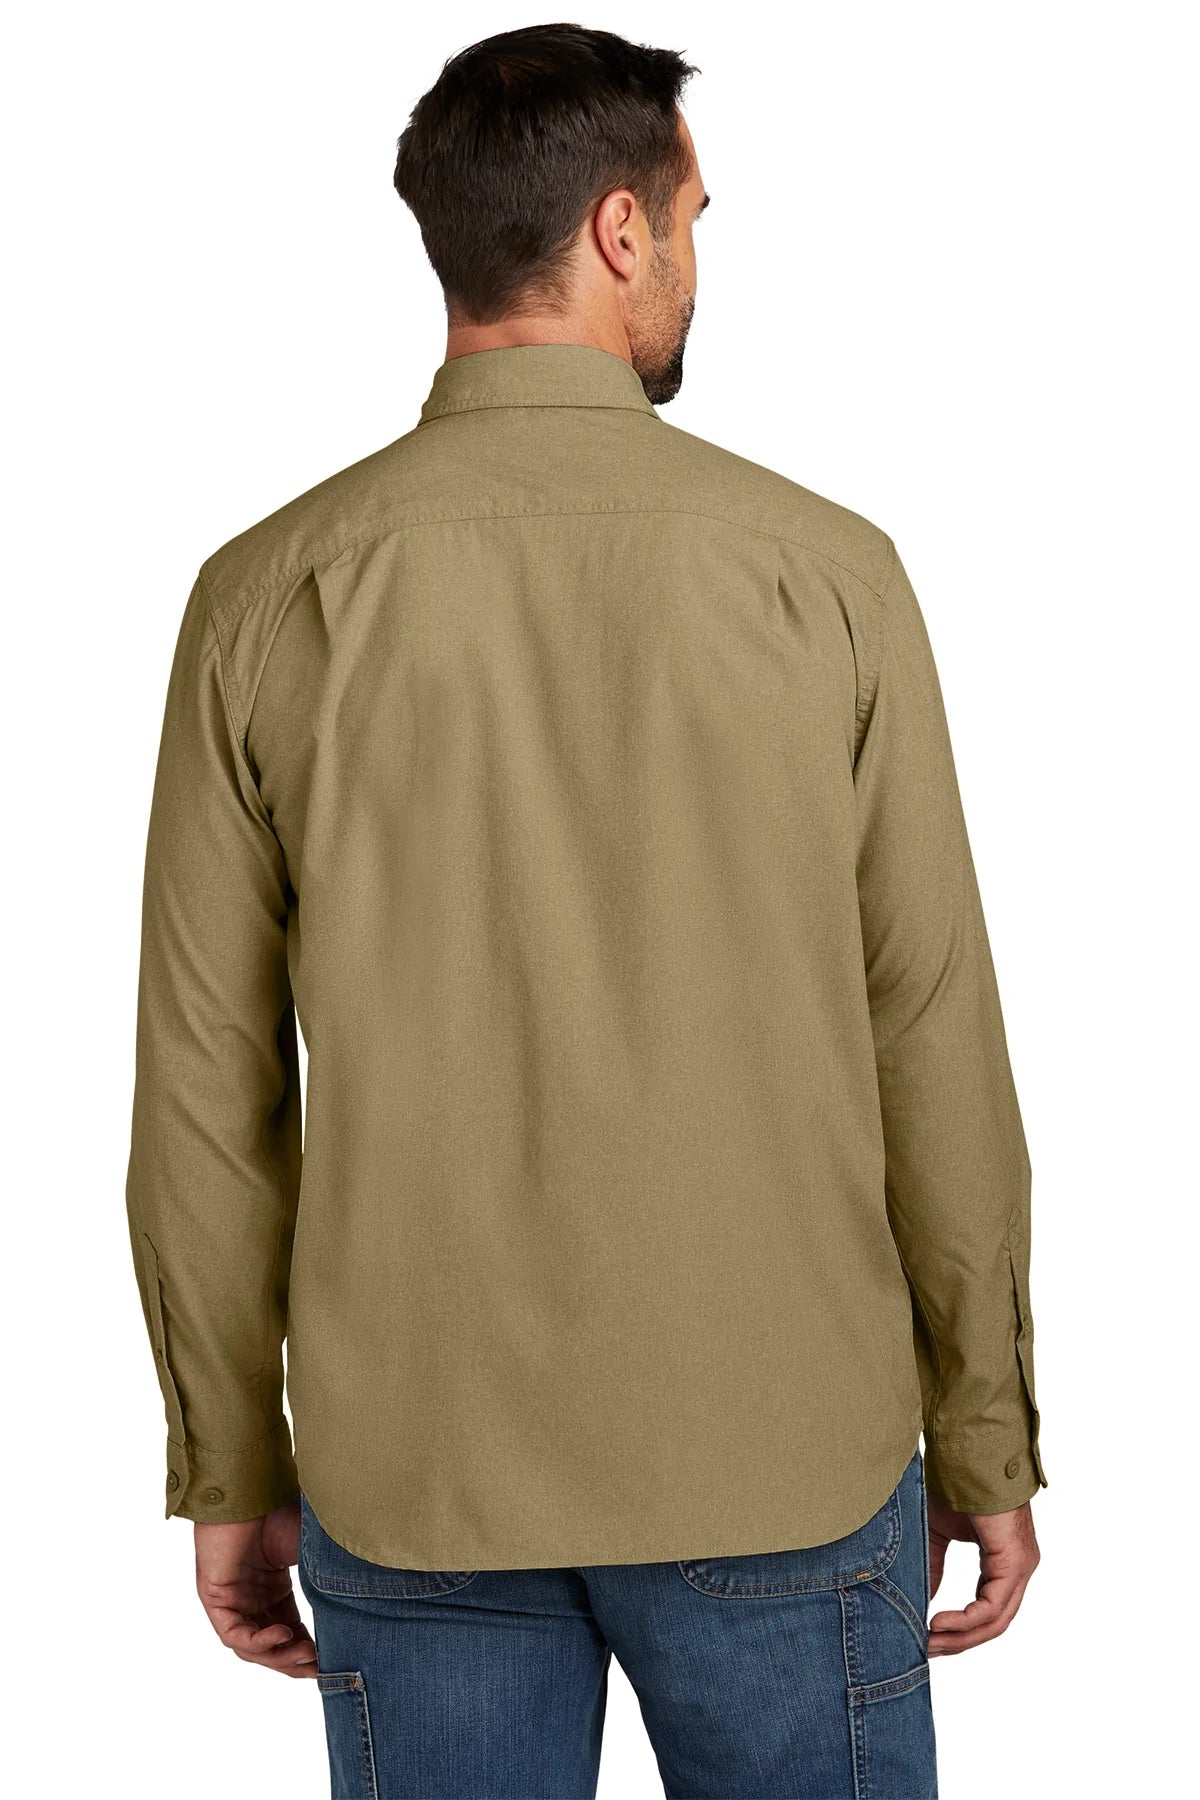 Carhartt Force Long Sleeve Custom Shirts, Dark Khaki